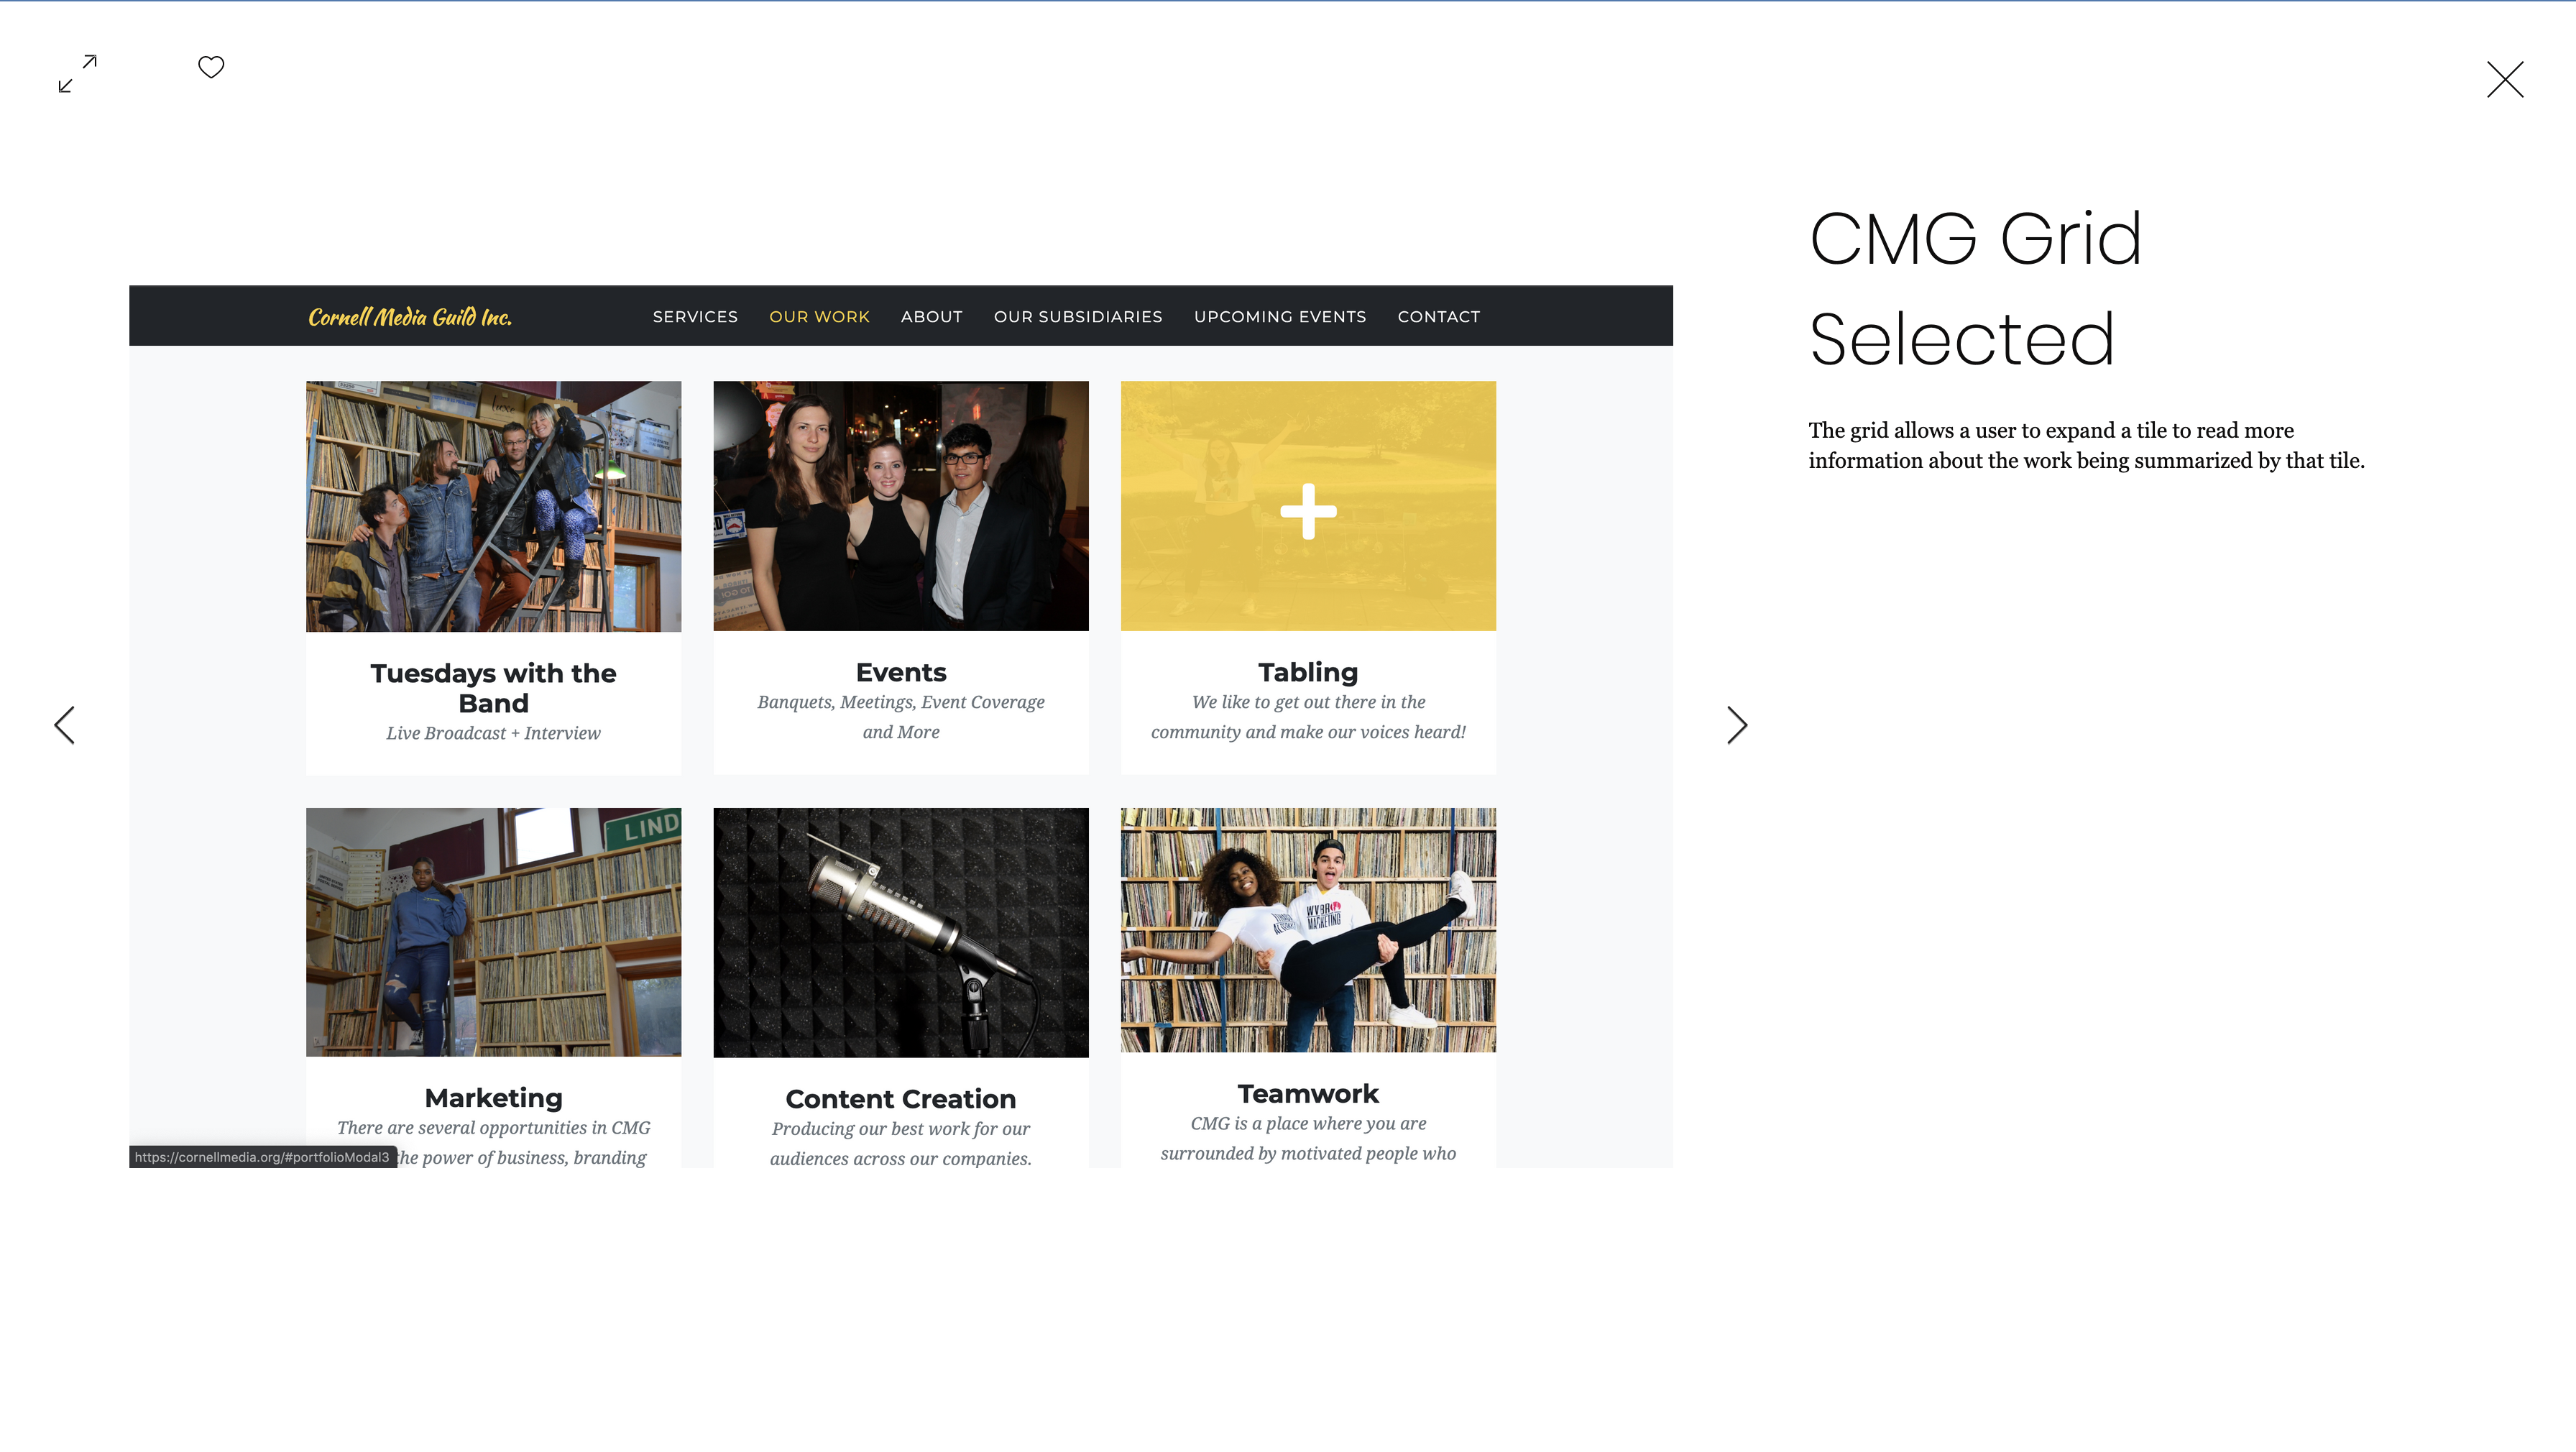 CMG Webpage 2020